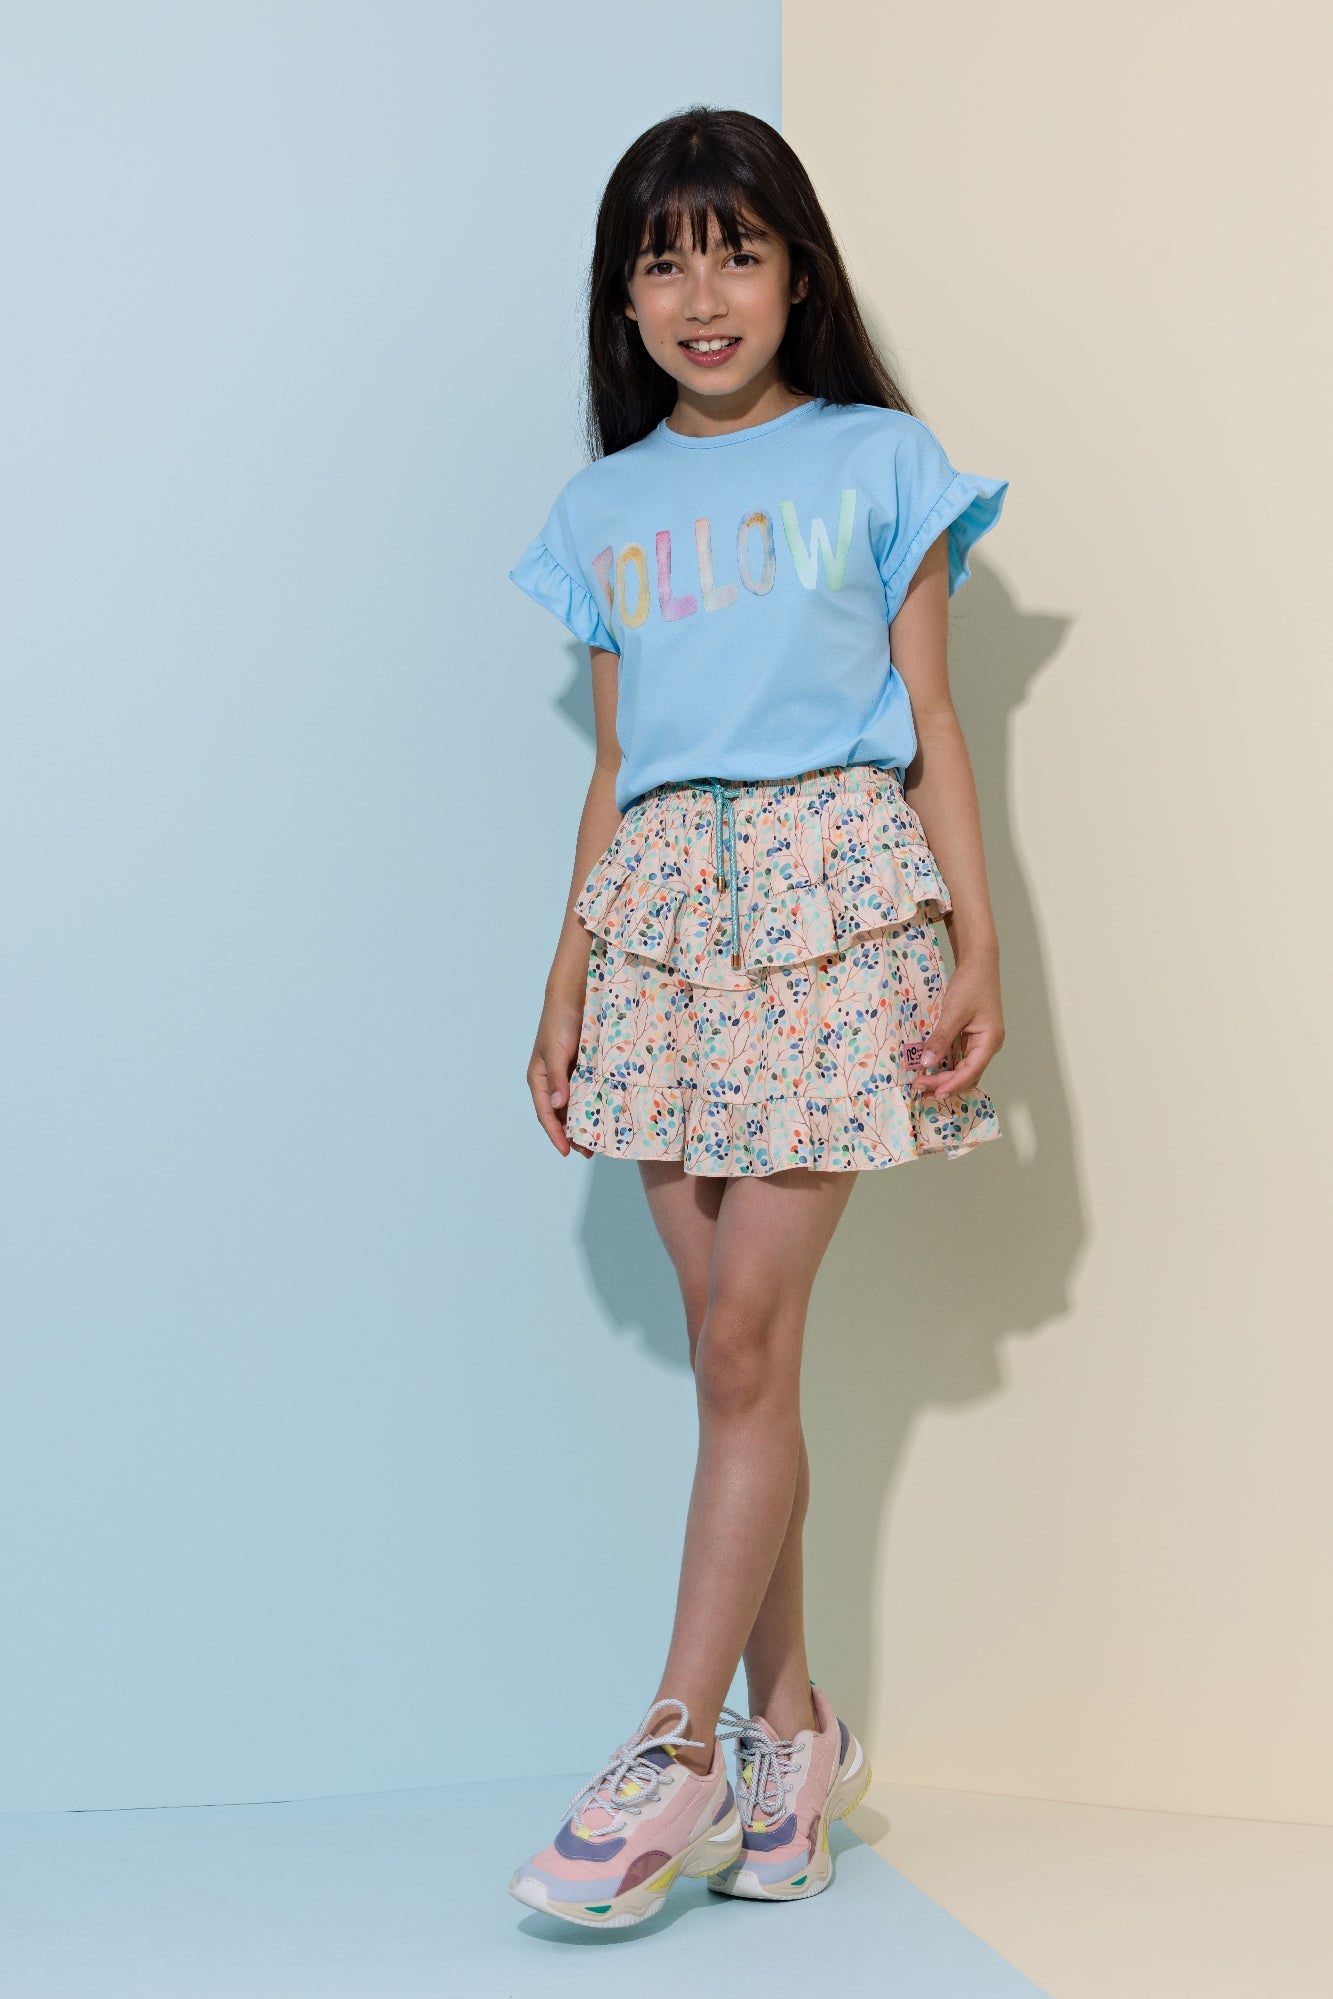 Meisjes Neva short skirt with pants lining van NoNo in de kleur Rosy Sand in maat 134-140.